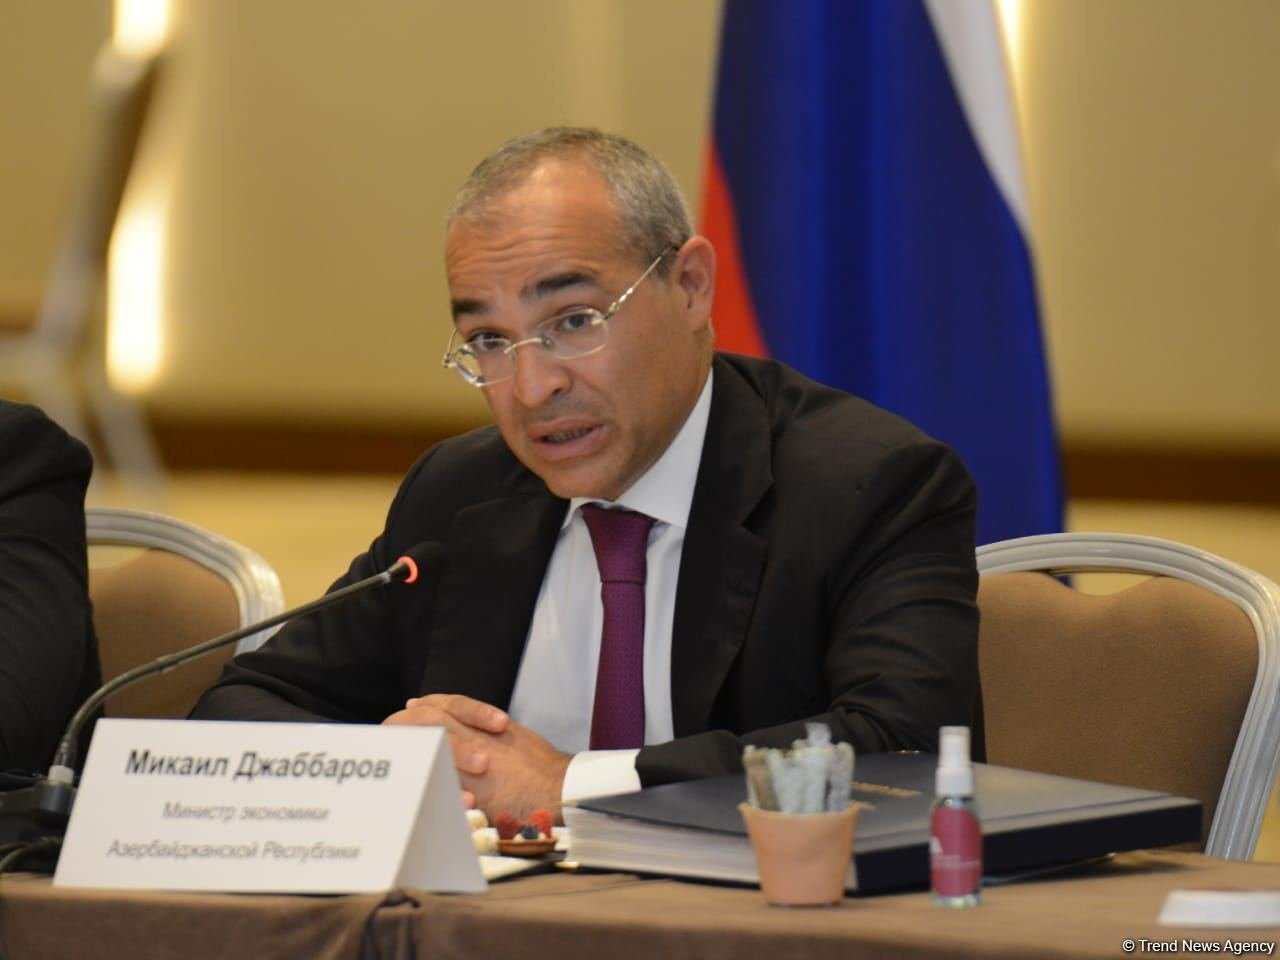 Открывшиеся в Израиле представительства Азербайджана - важные платформы для расширения связей - министр